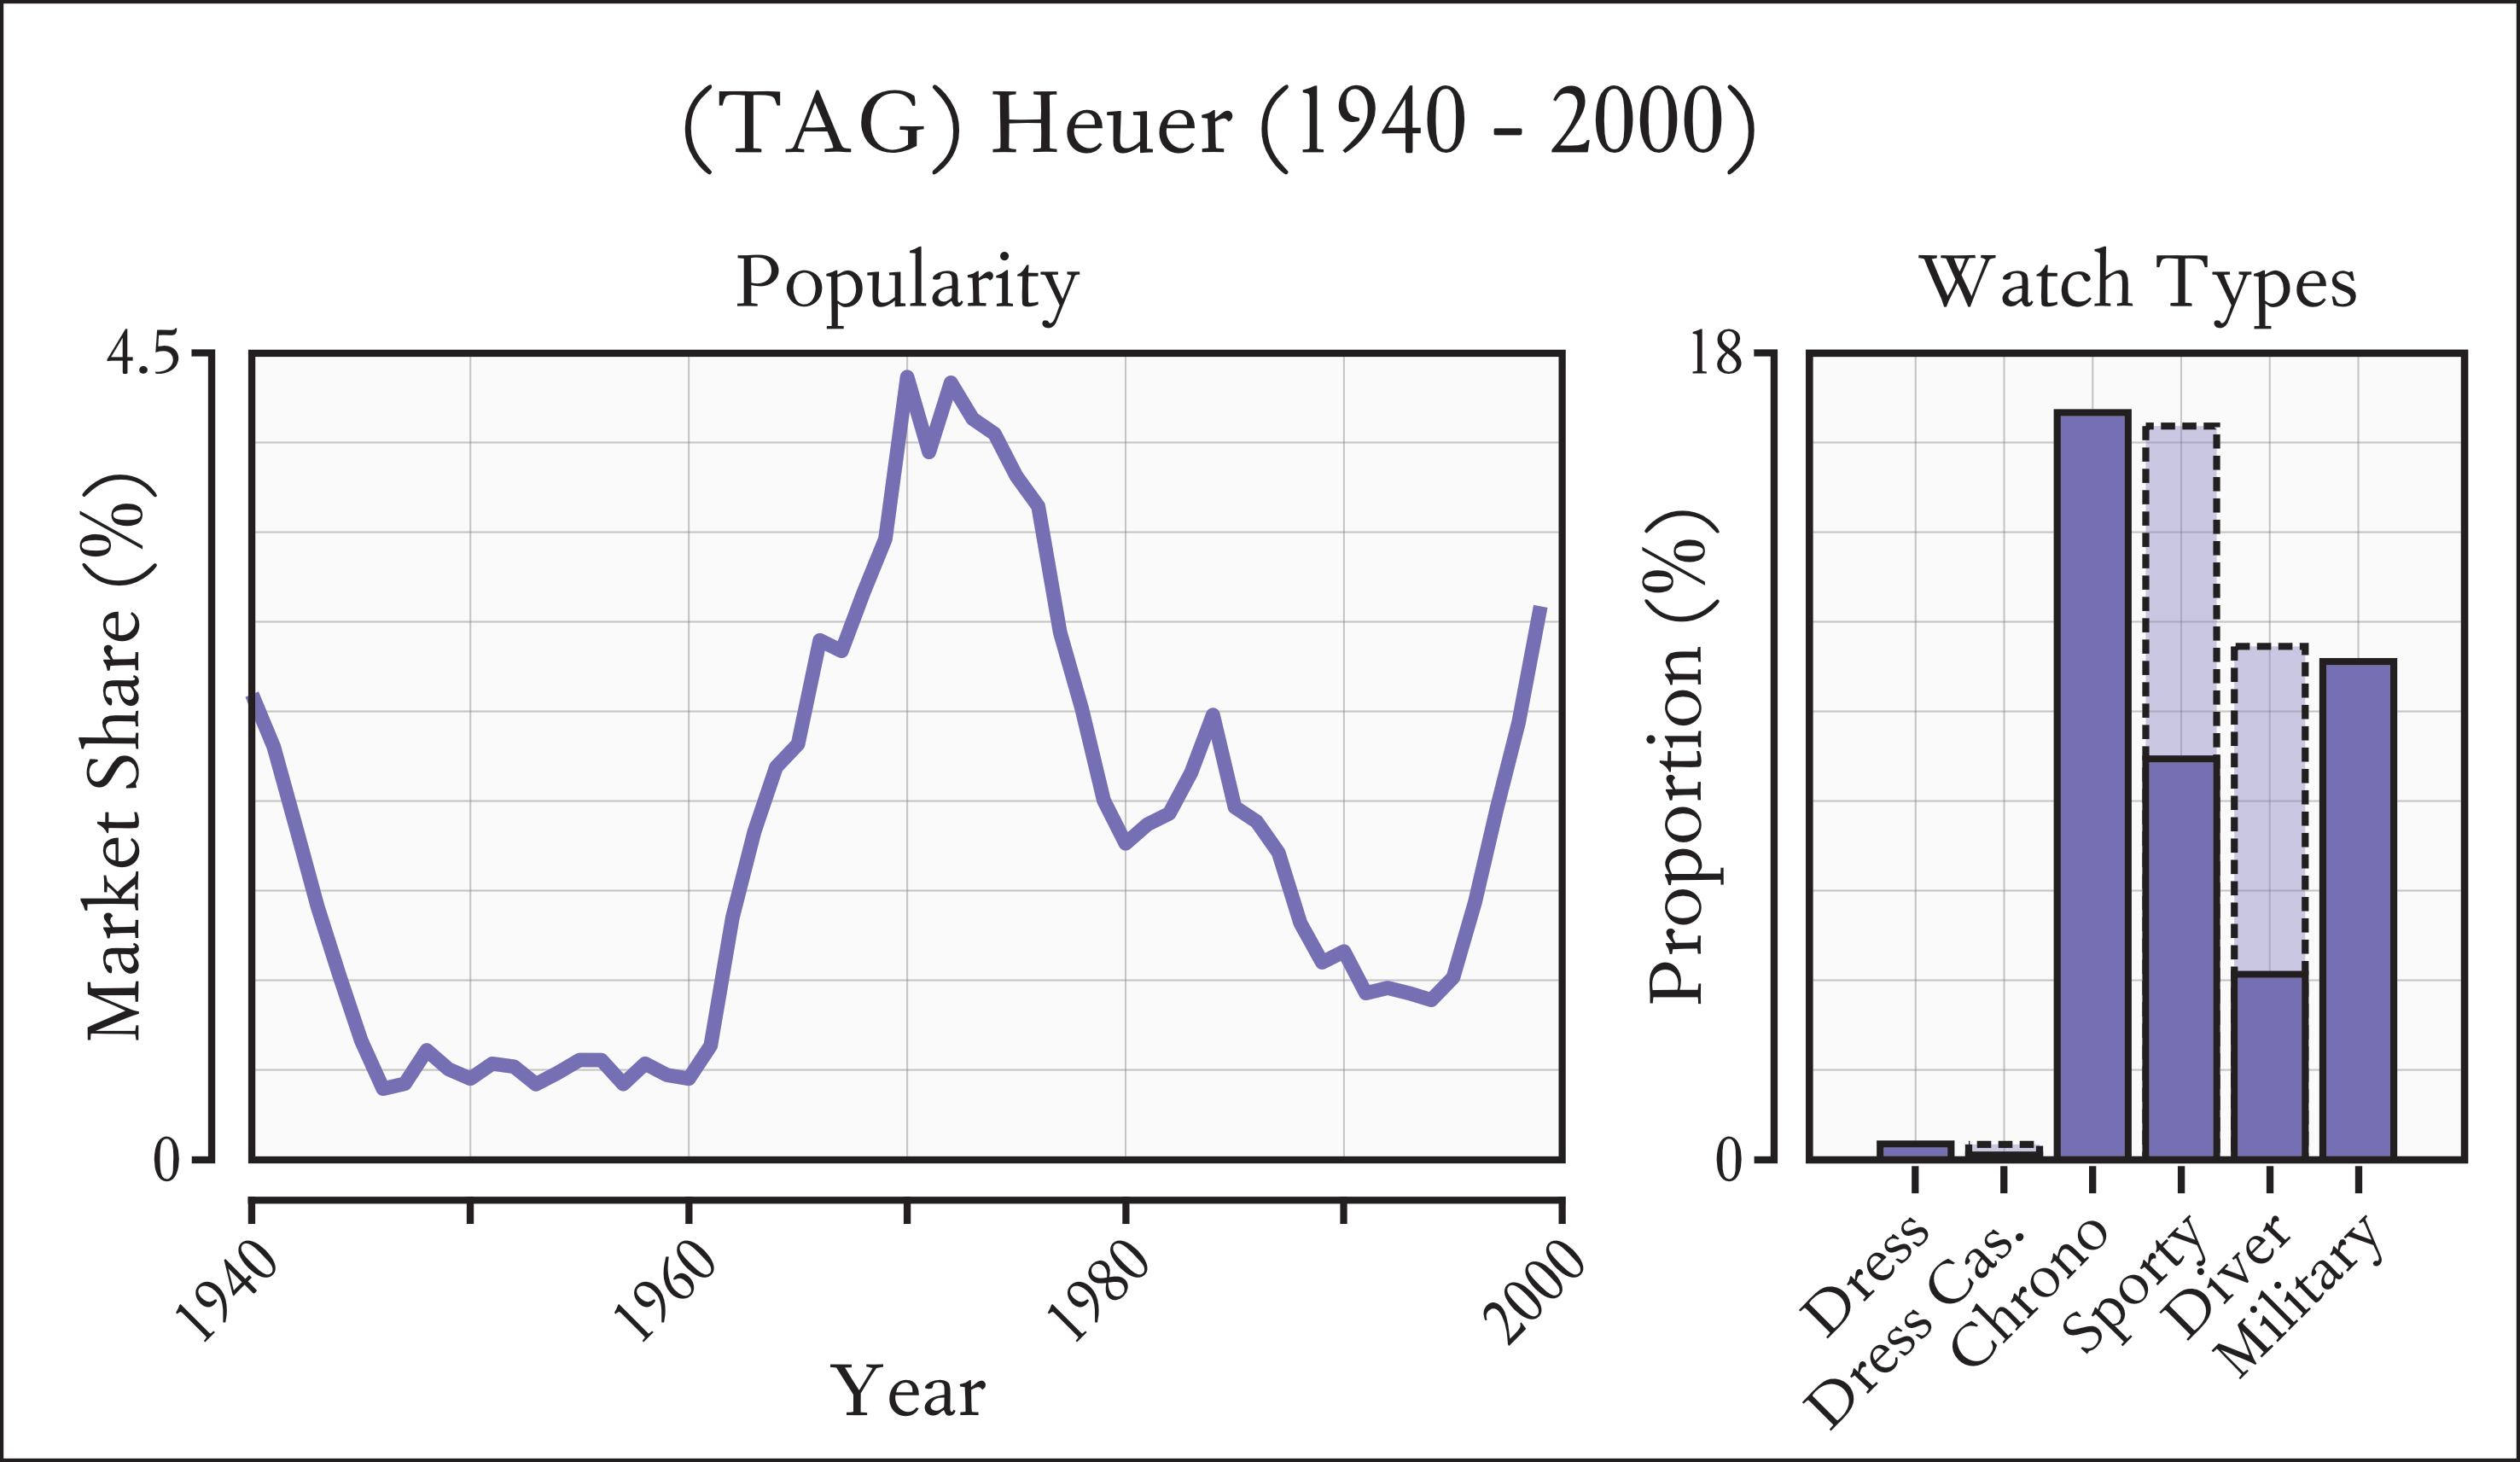 Distribution of Heuer popularity between 1940-2000